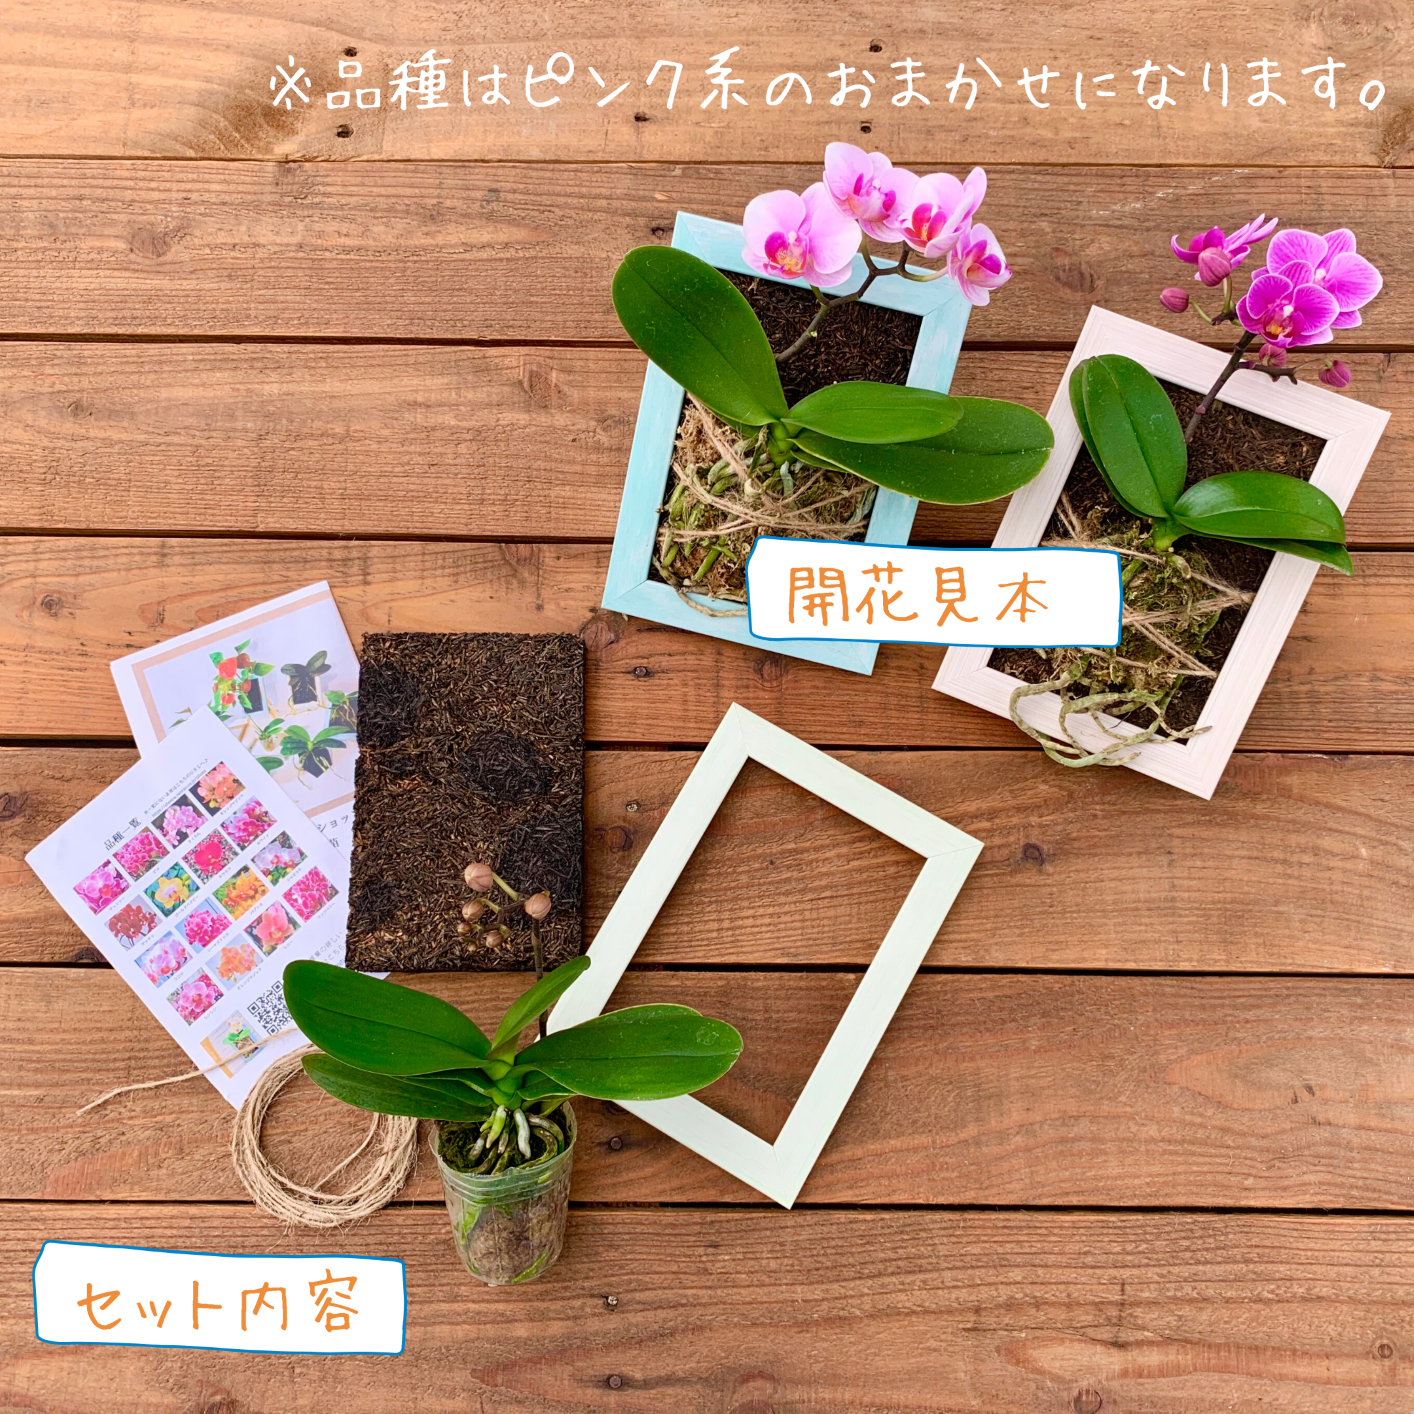 着生胡蝶蘭 作成キット 花芽付き苗 椎名洋ラン園 よいはな Yoihana 最高品質のお花をお届けするネット通販